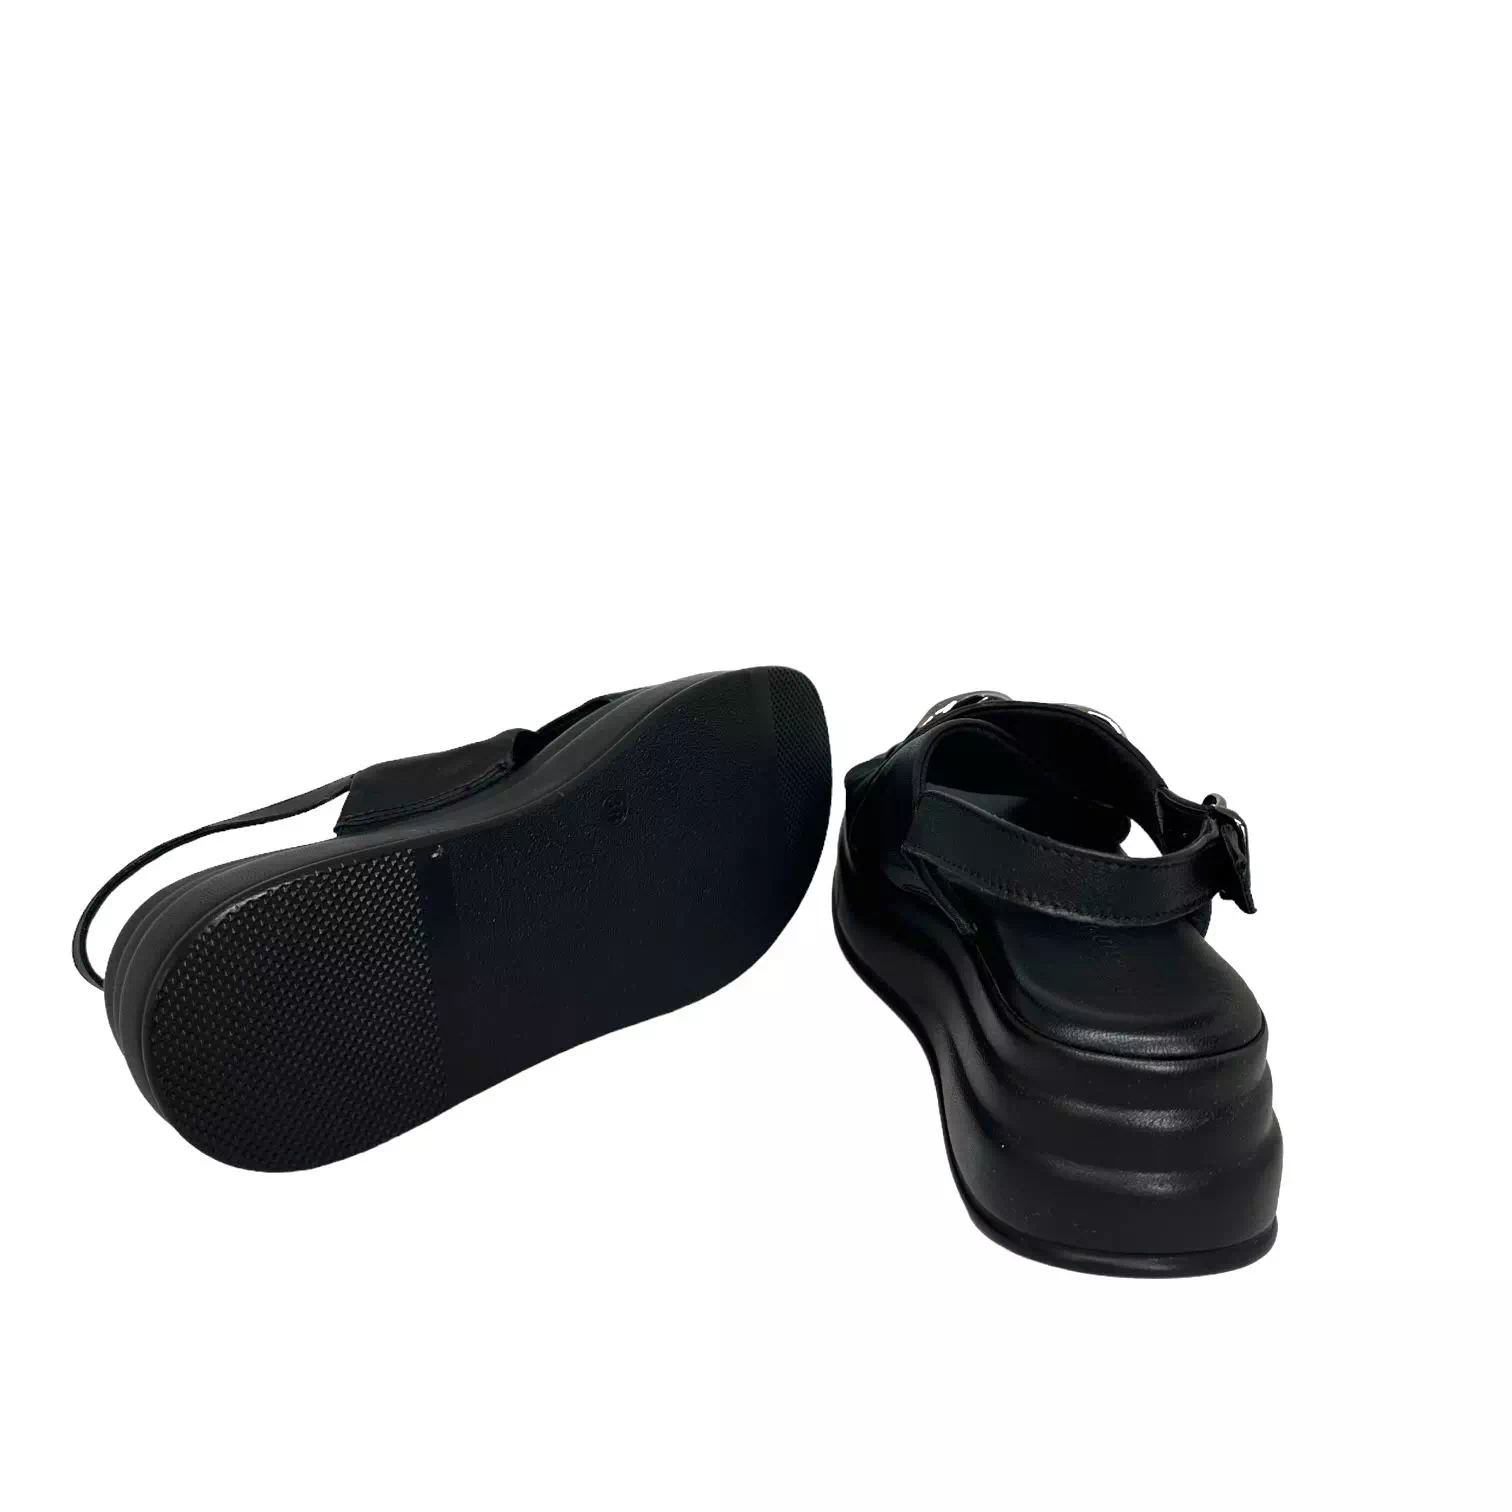 Sandale Tamaris negre cu platforma si accesoriu